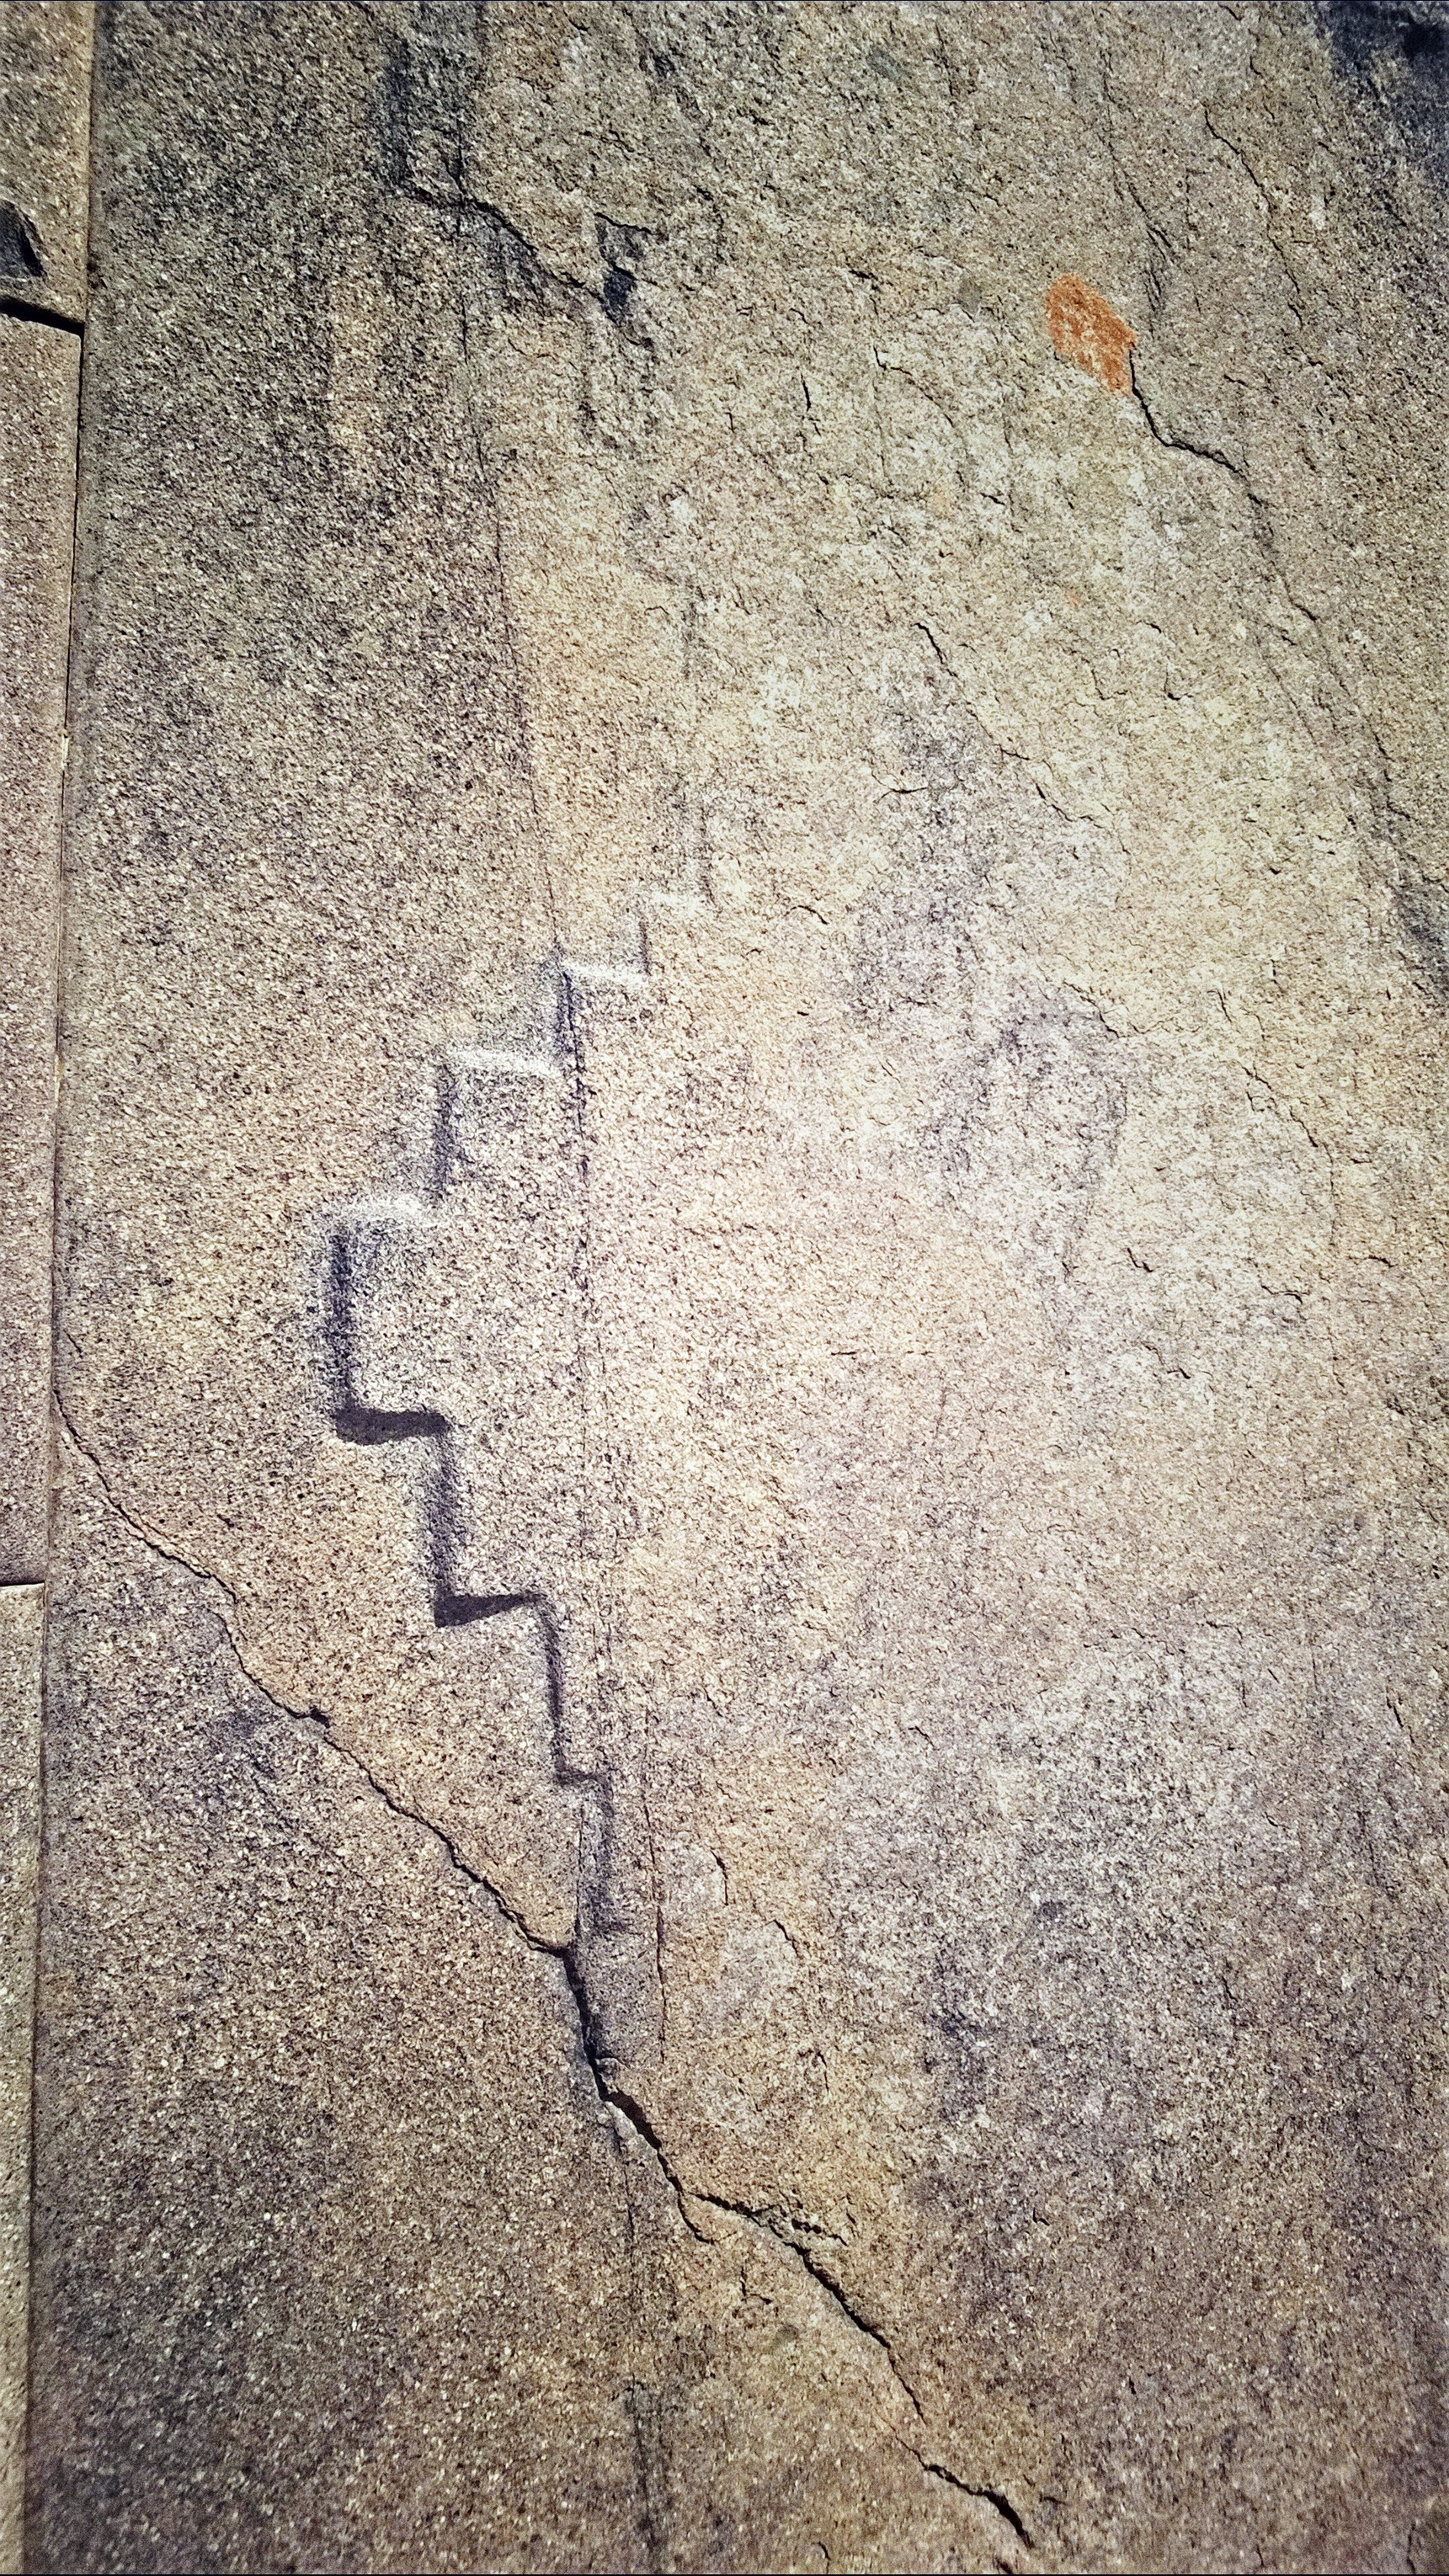 Un type de croix andine ? Mur du Temple du Soleil du site archéologique d'Ollantaytambo. Crédit Salomé Ietter